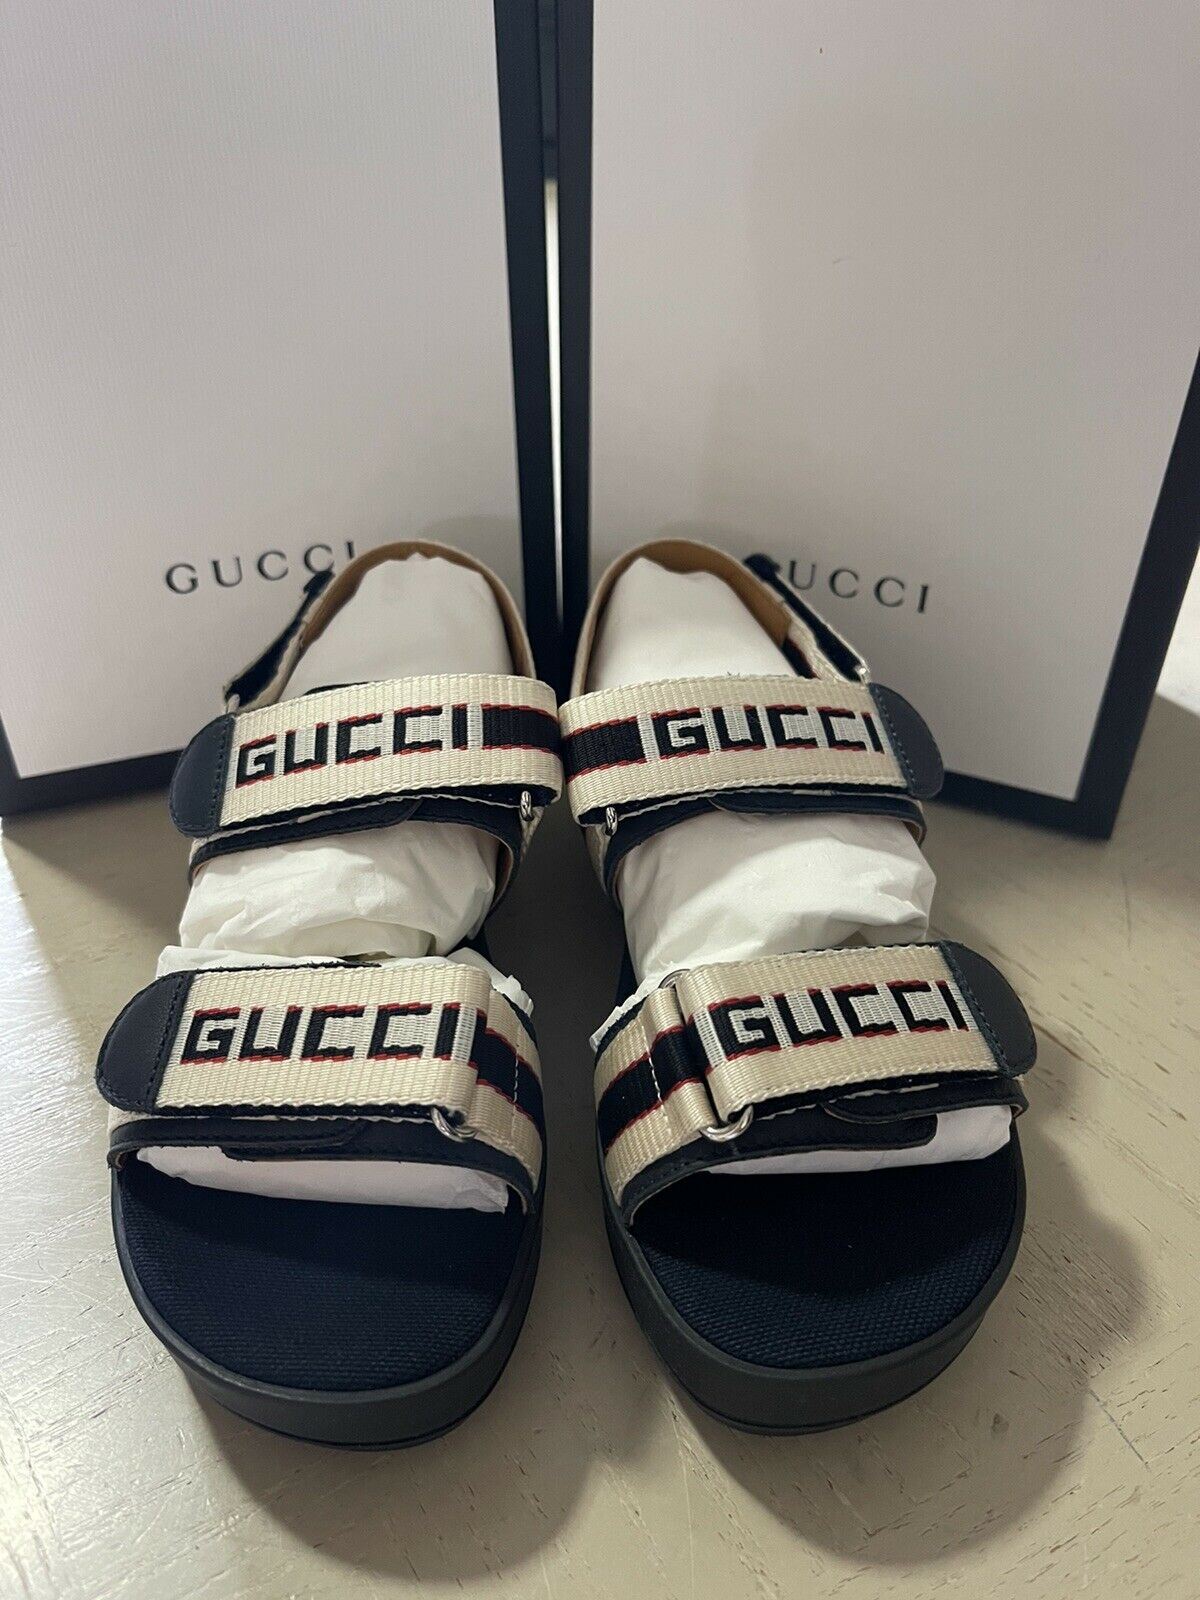 NIB Gucci Детские сандалии из парусины/кожи, черные/белые, размер 30/12, США, возраст 5,5 лет